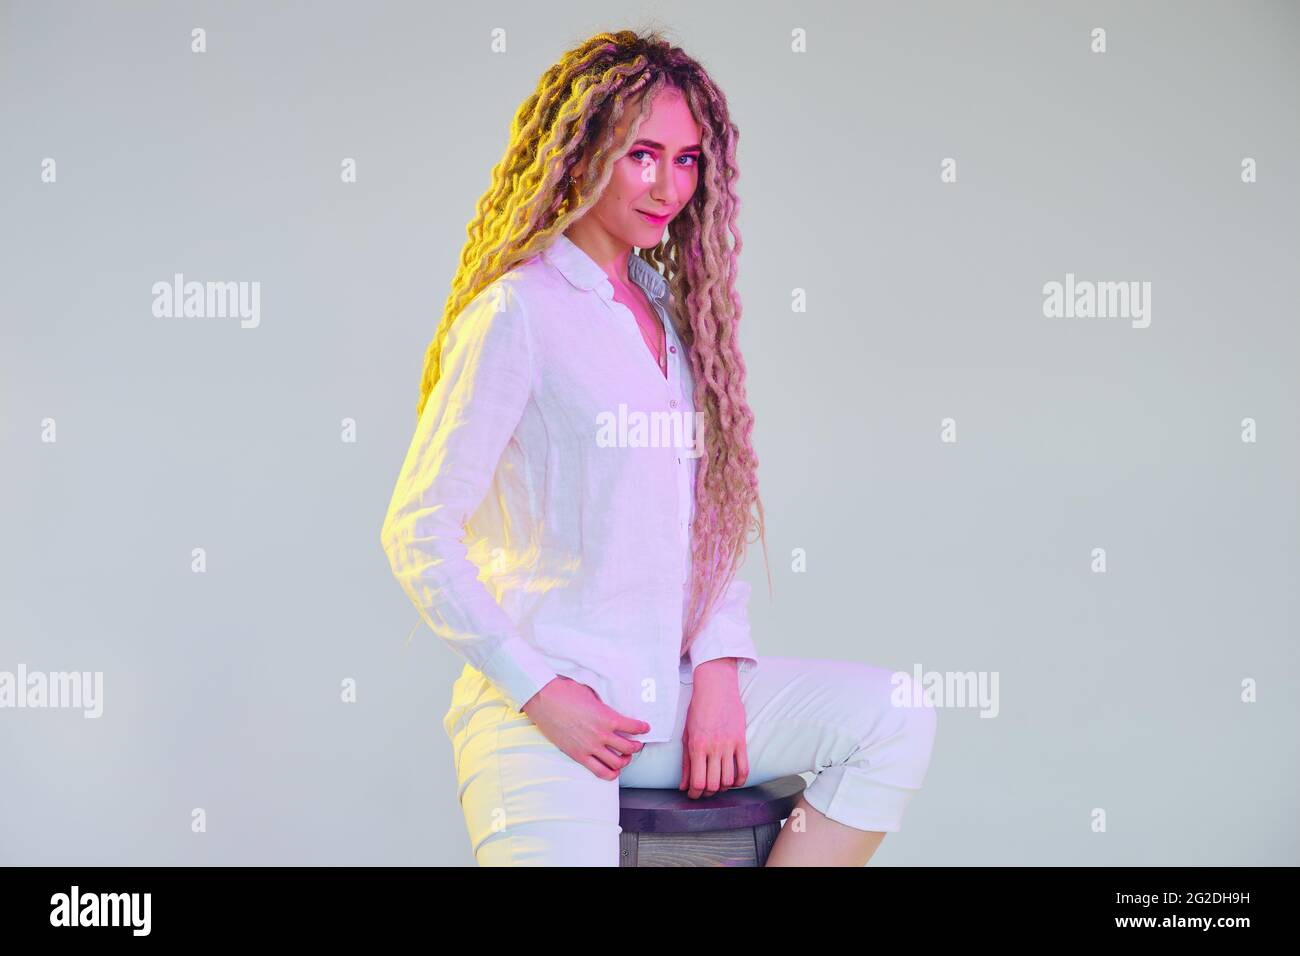 Femme délicate dans un chemisier blanc et un pantalon sous une lumière fluo Banque D'Images